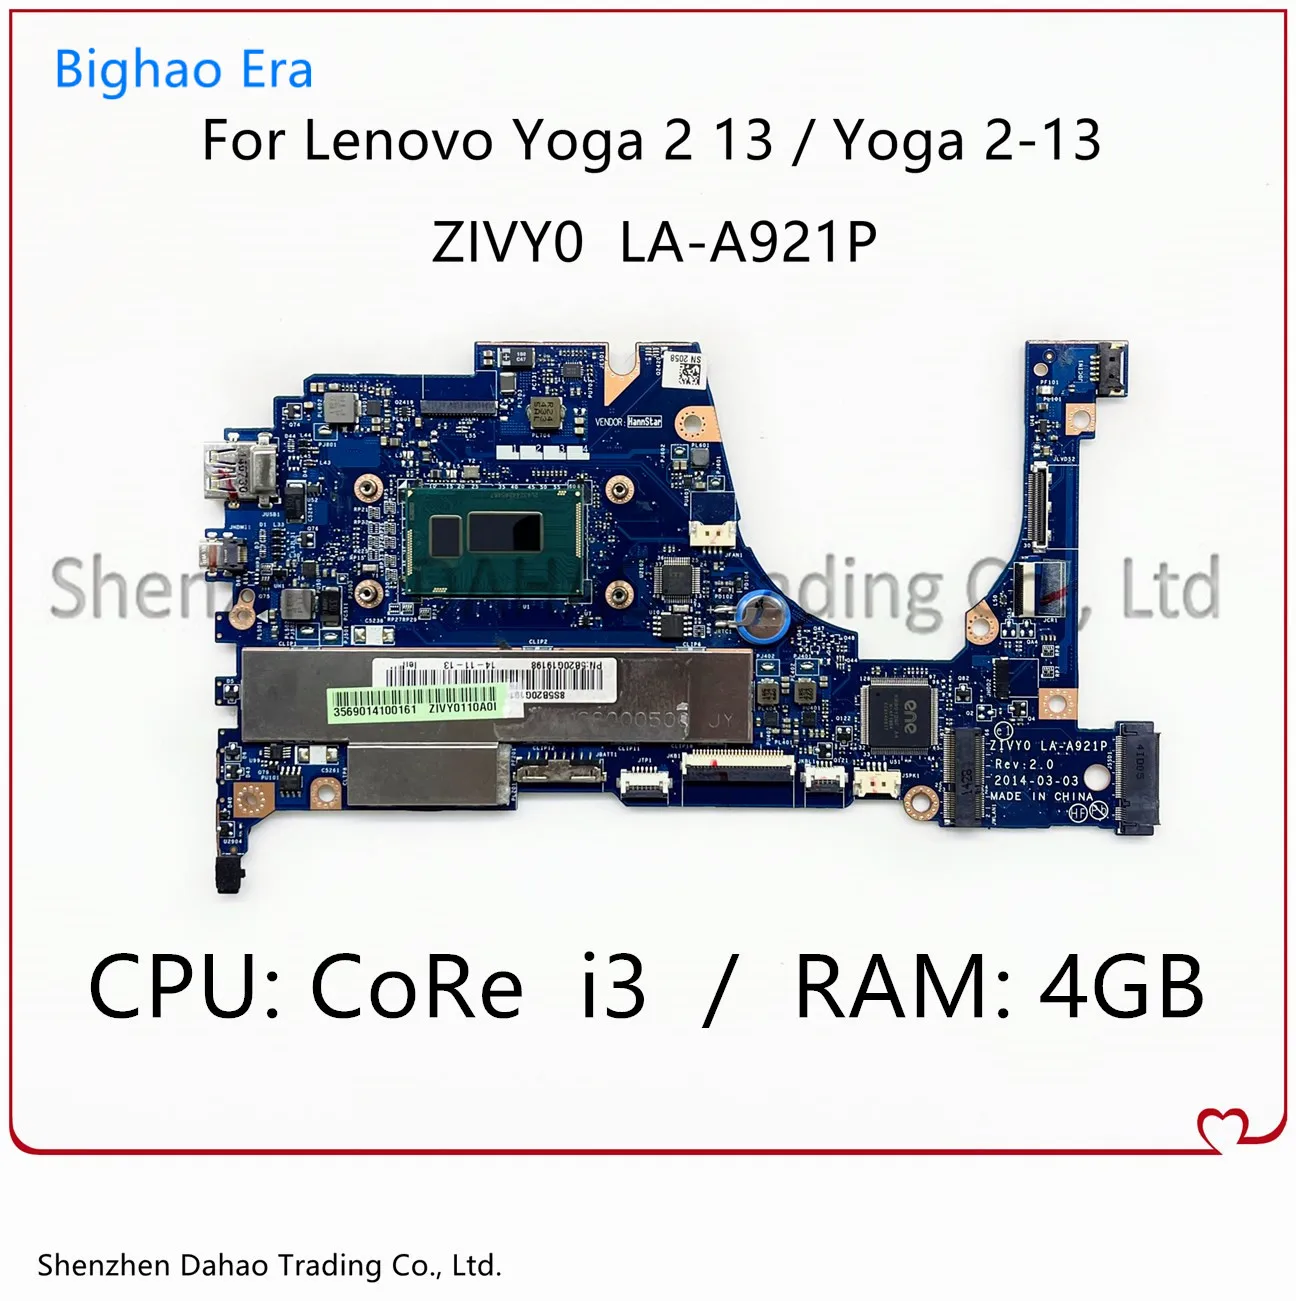   ZIVY0   Lenovo YOGA 2-13 Yoga 2 13,     i3 4GB-RAM 5B20G55969 5B20G19207,  100%